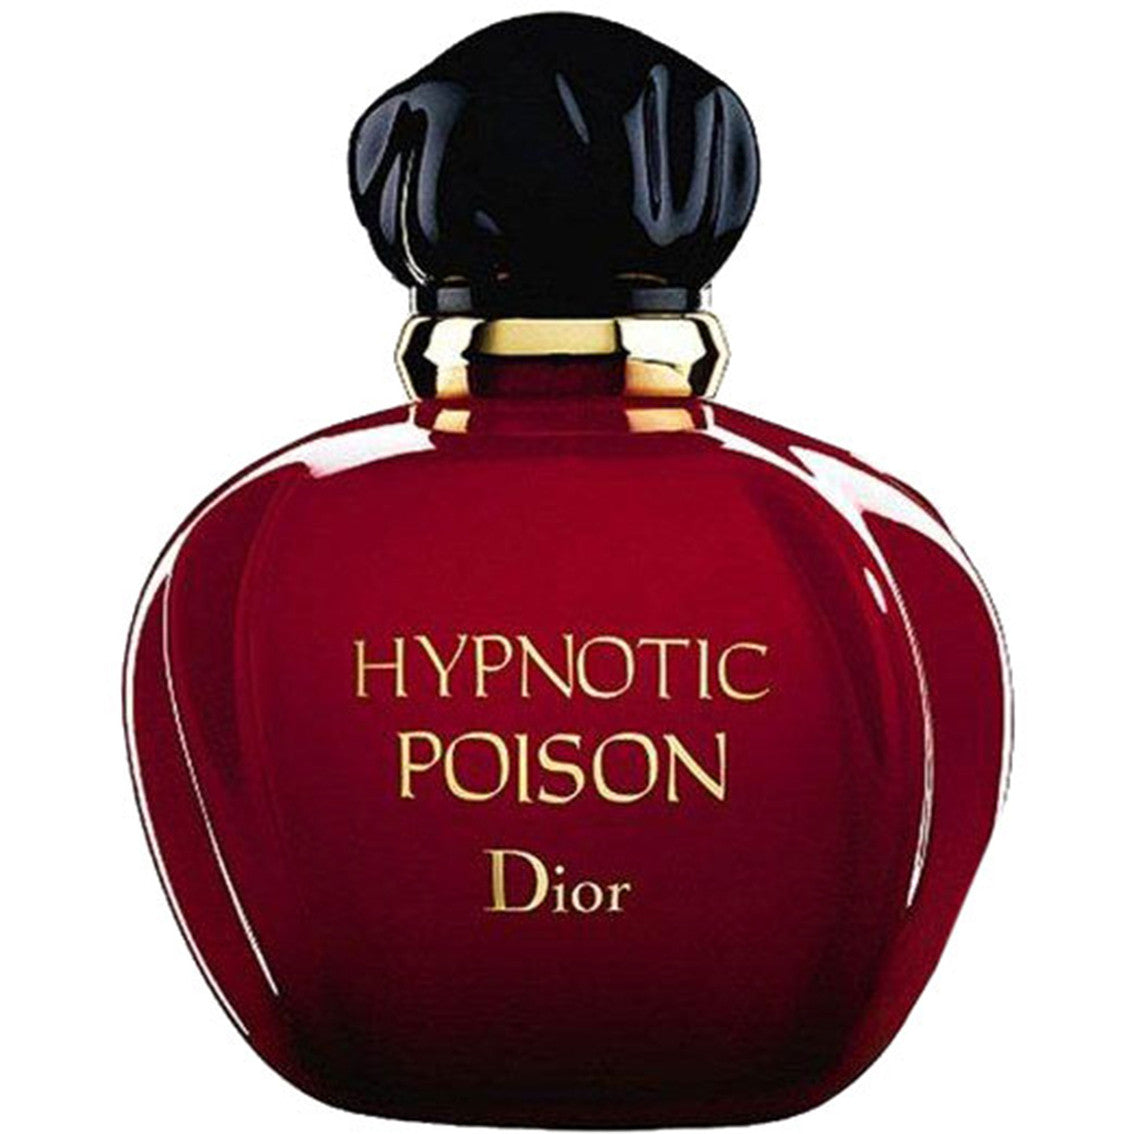 Dior Hypnotic Poison Eau De Toilette 100 ml Tester - RossoLaccaStore